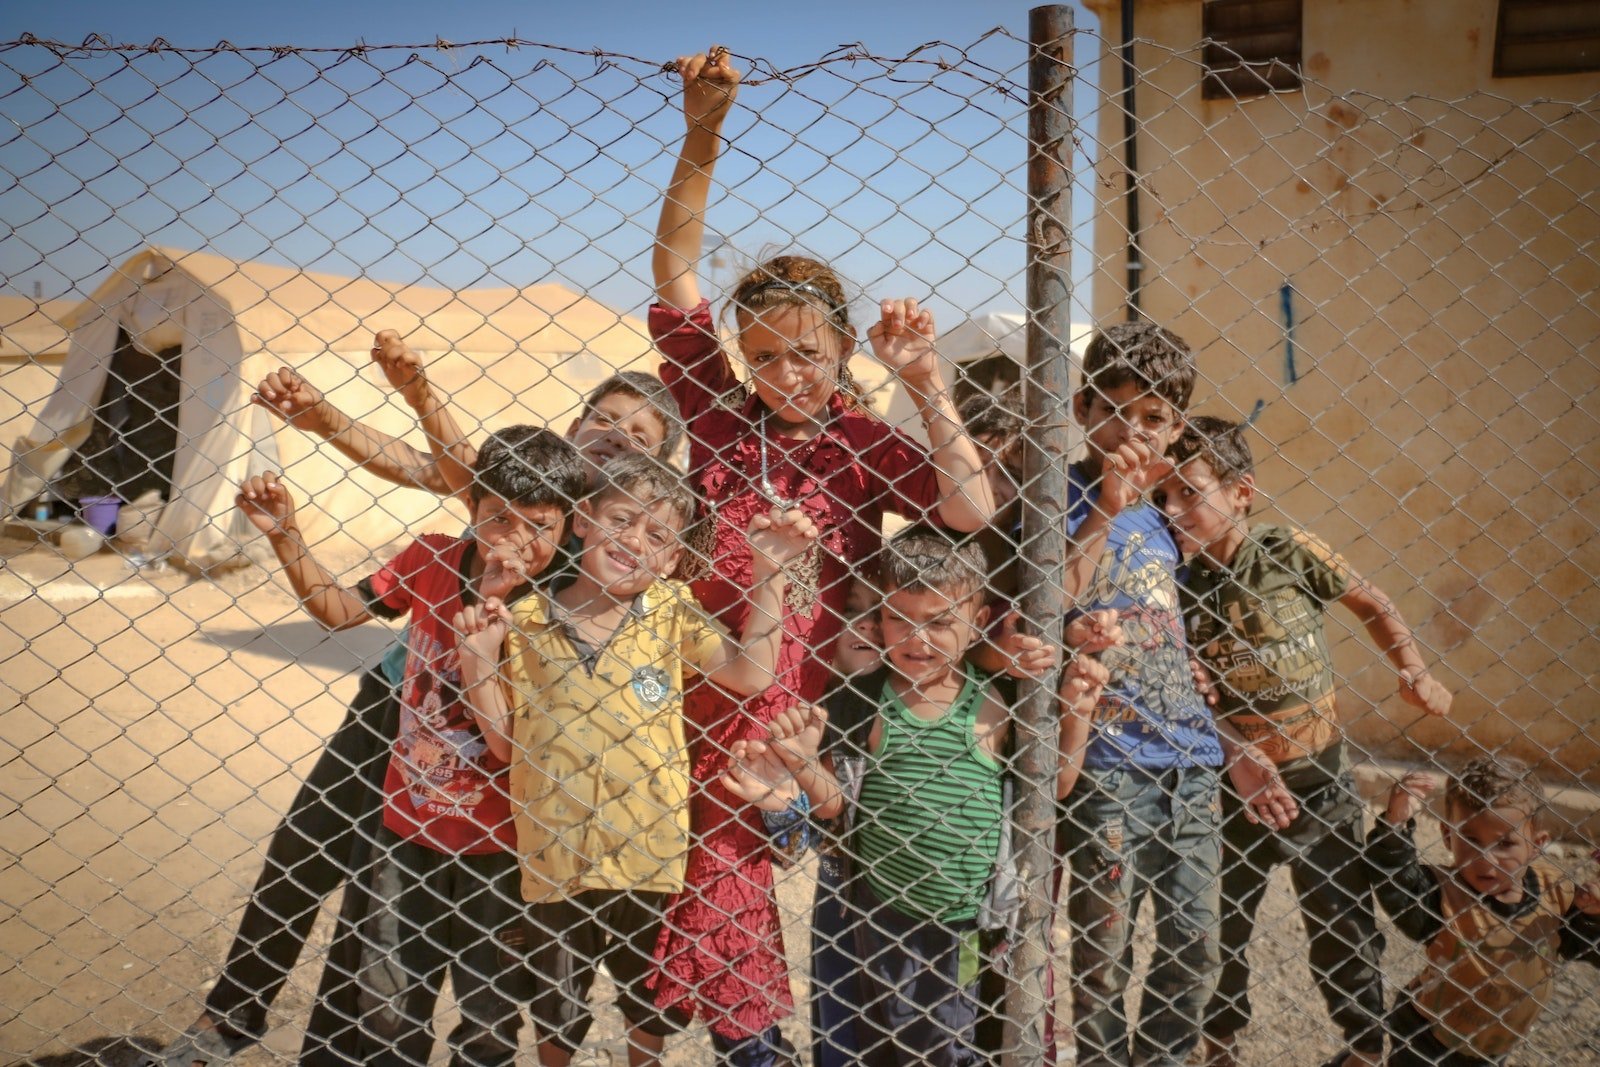 Rezolucja PE w sprawie migracji i uchodźców ma przyczynić się do poprawy losu wszystkich dzieci i ich rodziców zmuszonych do opuszczenia swojego kraju